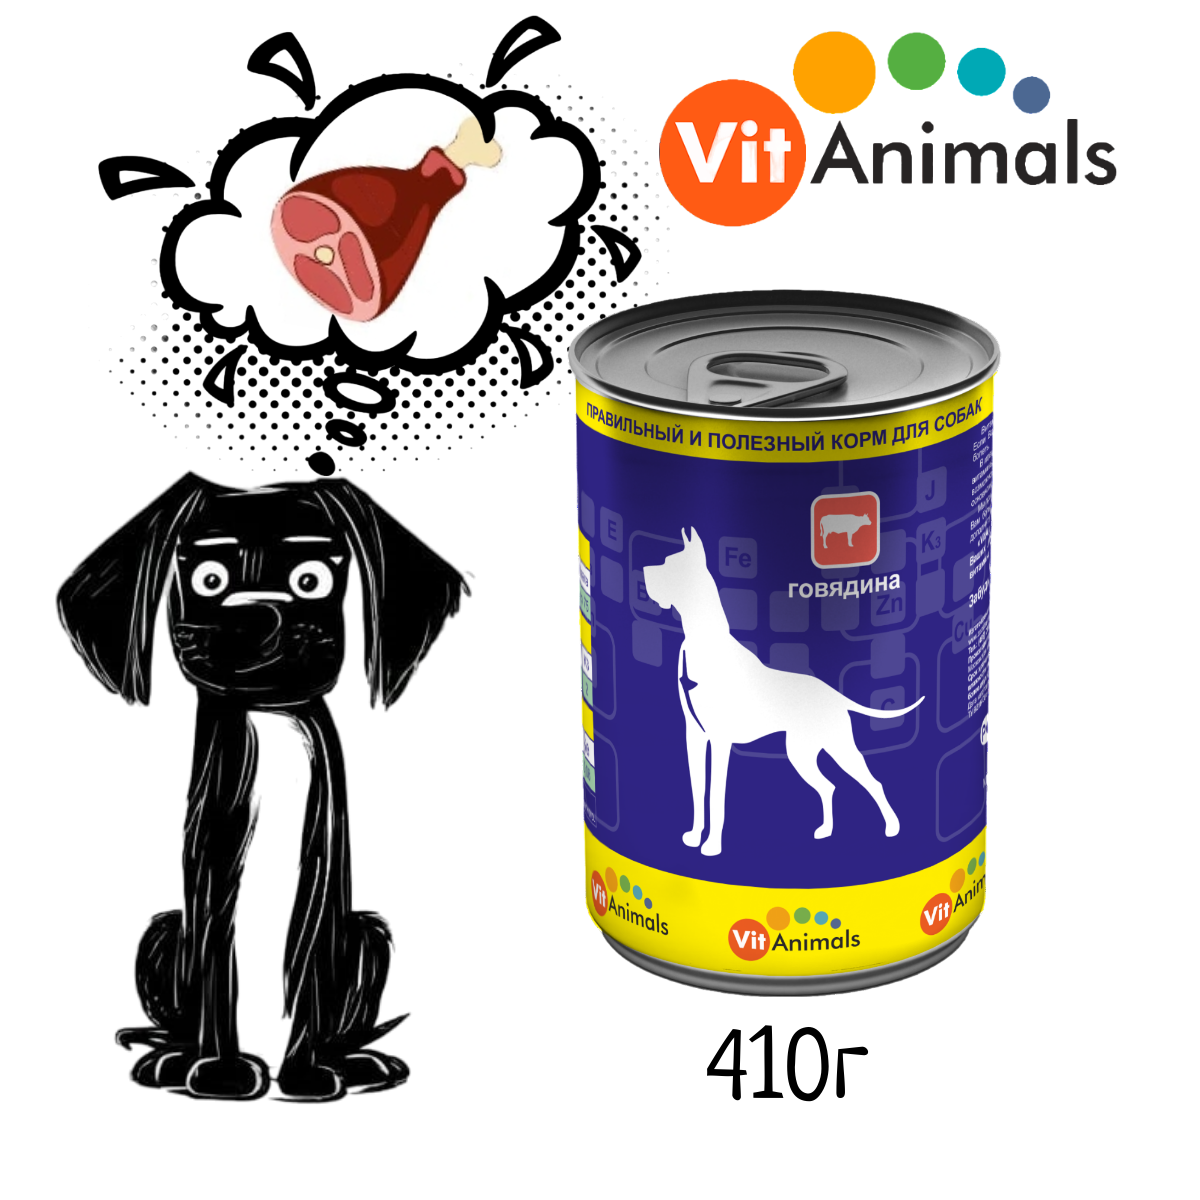 VitAnimals консервы для собак Говядина 410г